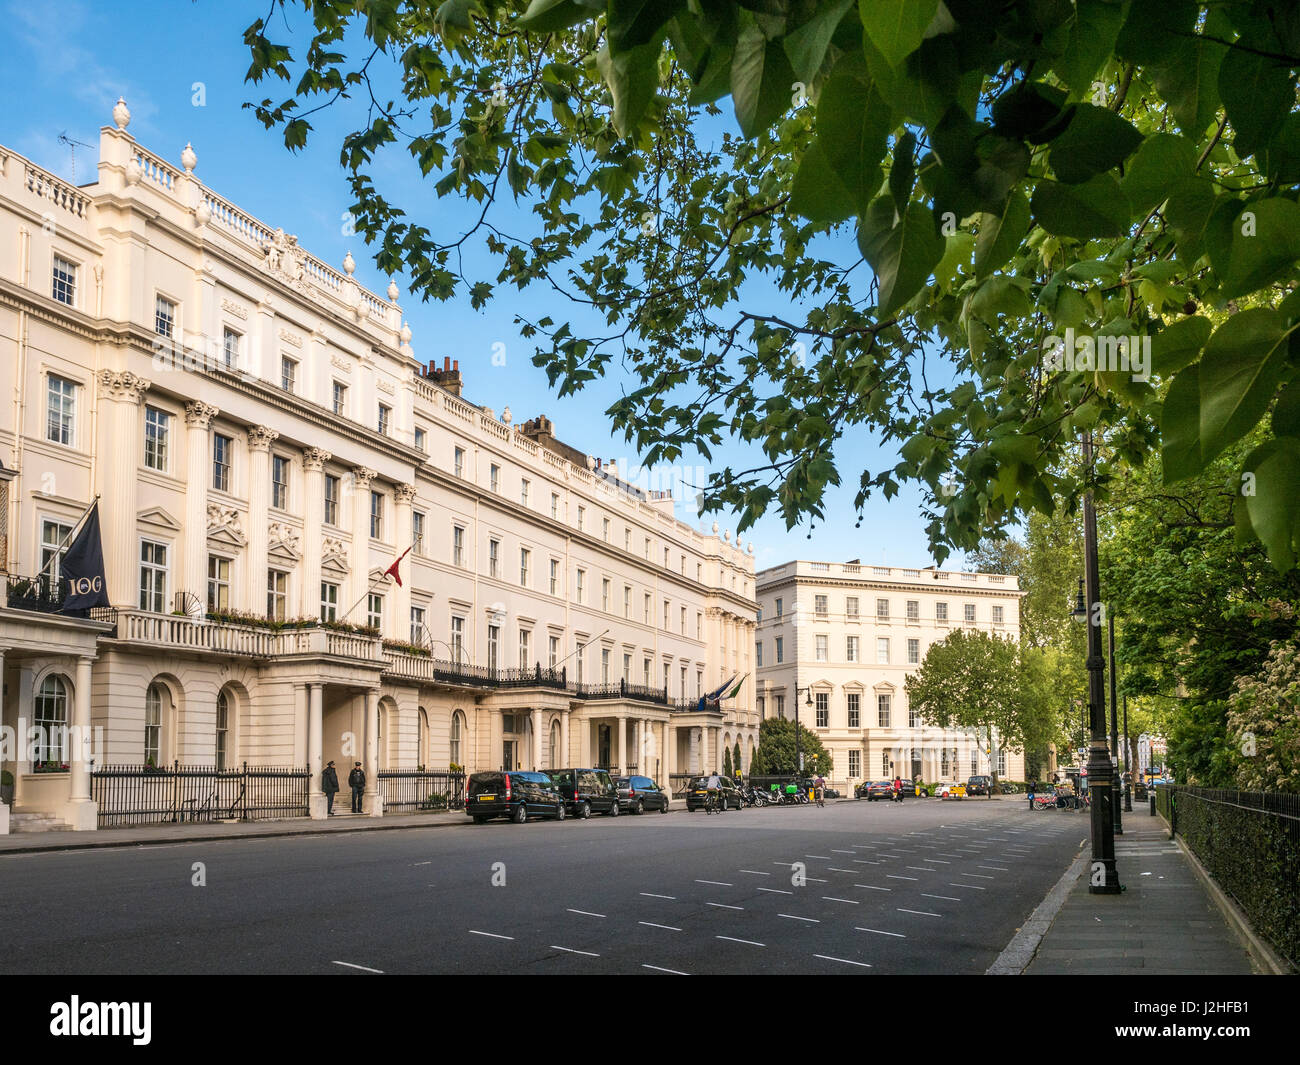 Residenzen am Belgrave Square in London. Stockfoto